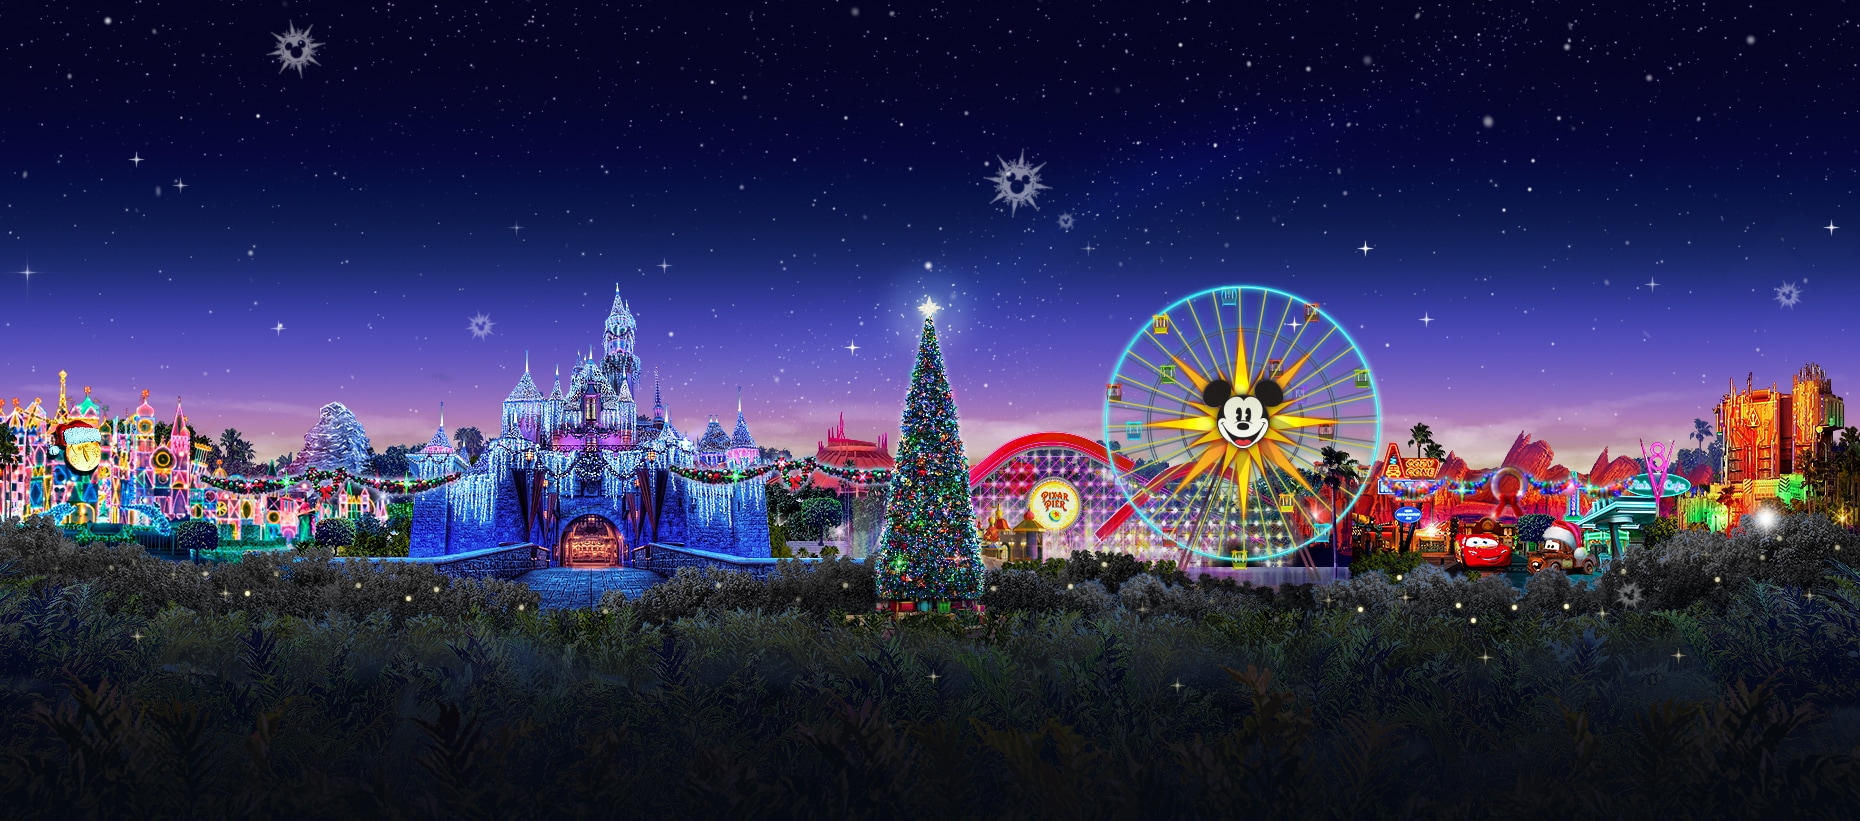 Disneyland Theme Park Tickets in Anaheim, California Disneyland Resort